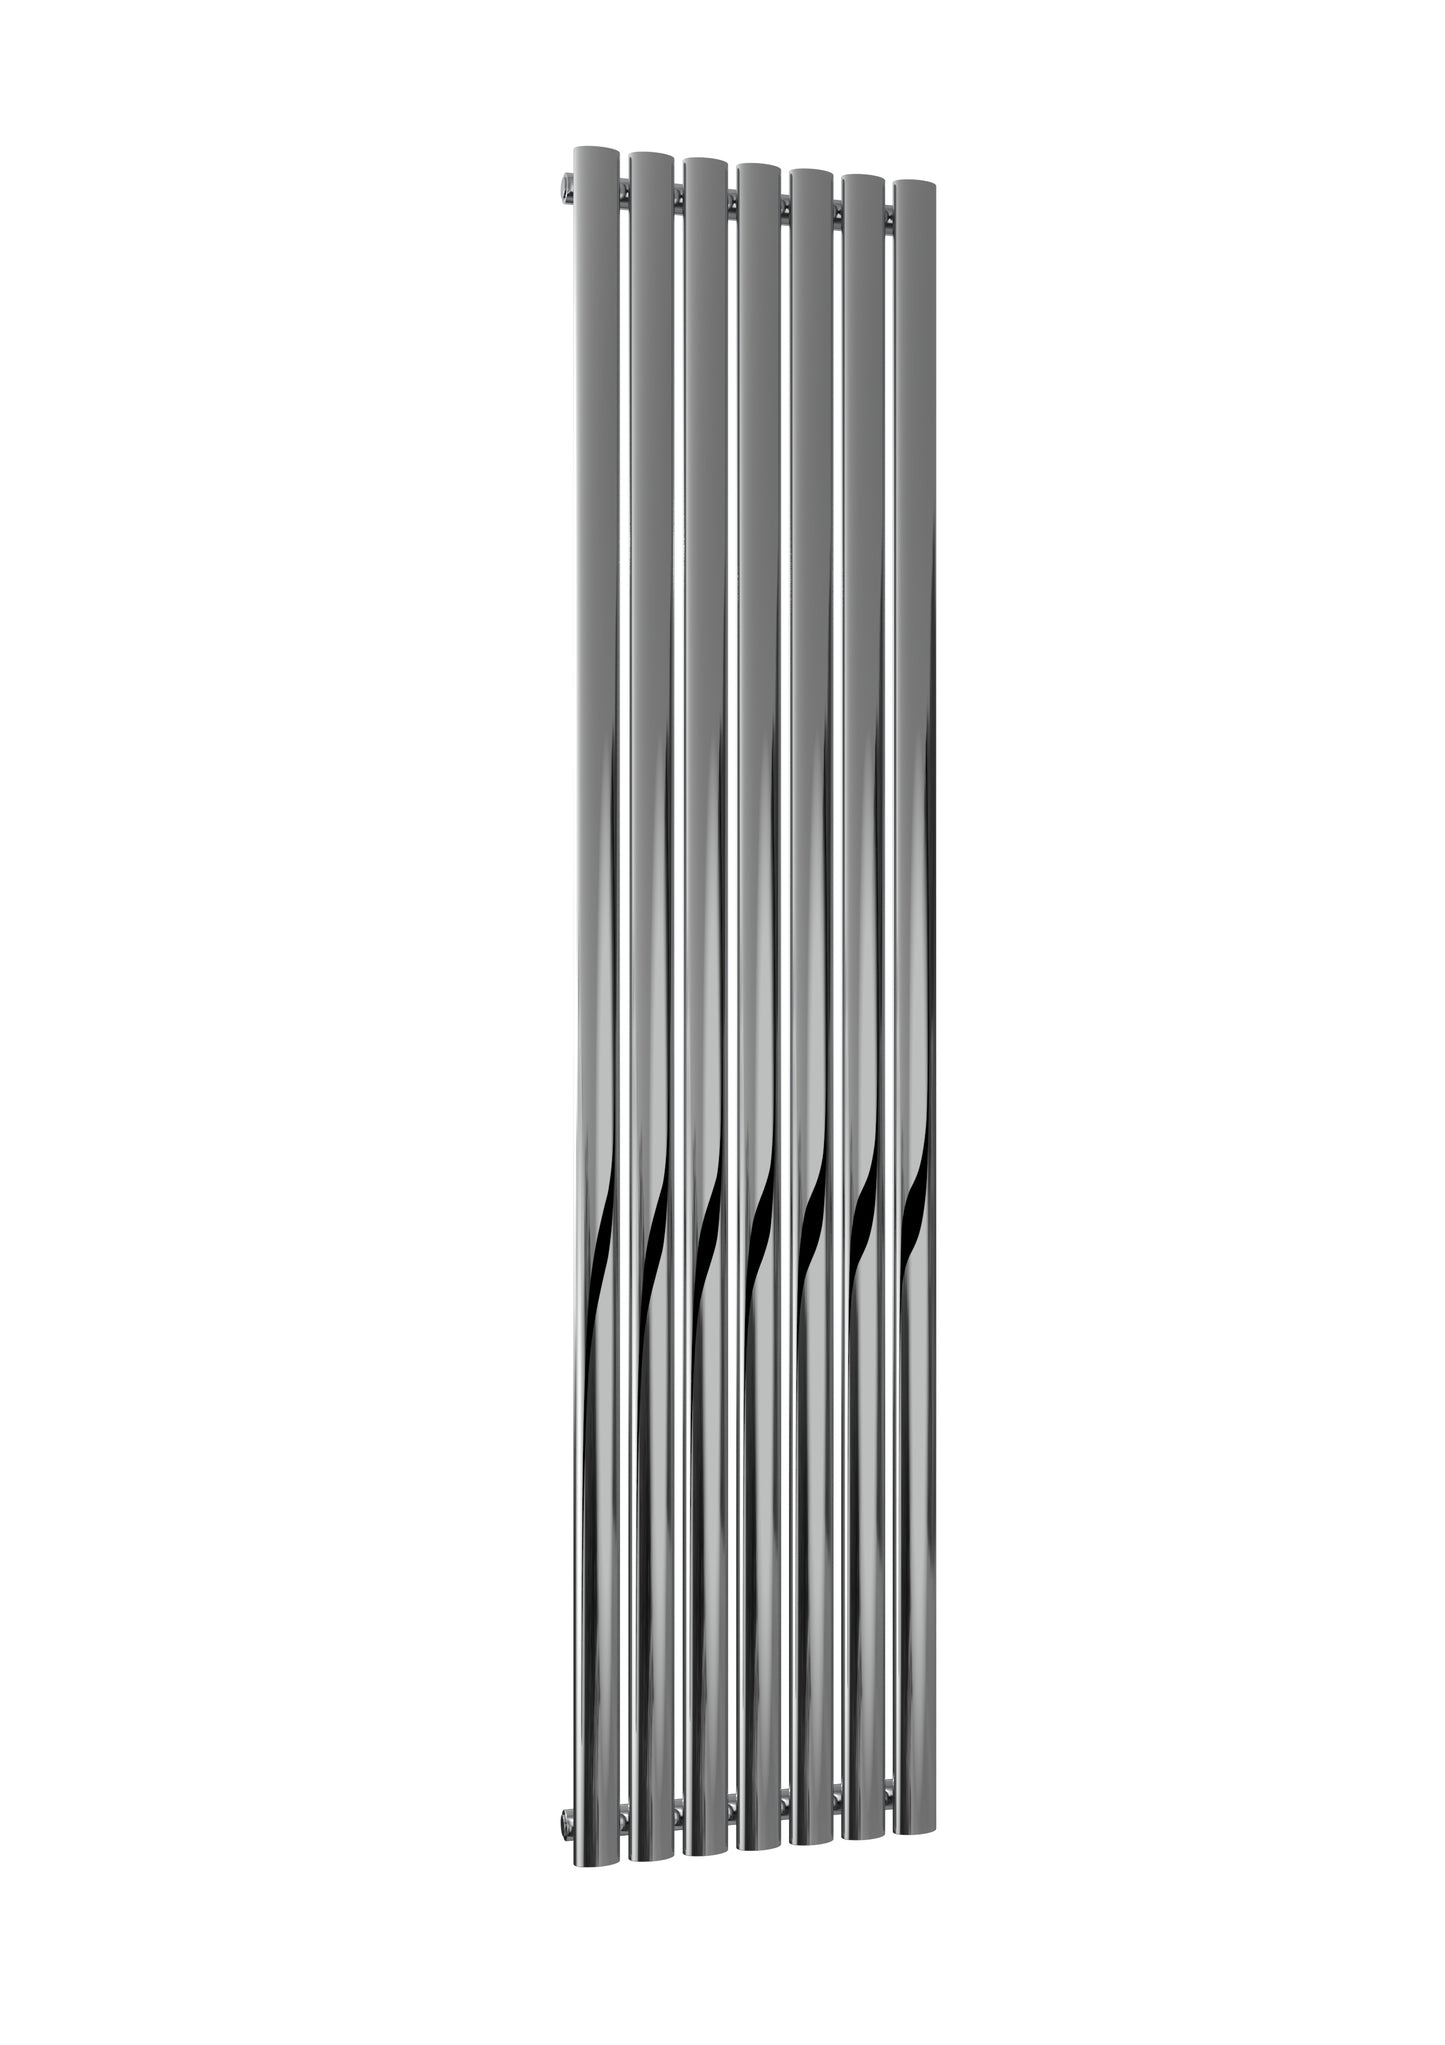 Neva Vertical Single Radiator - 1800mm Tall - Chrome - Various Sizes